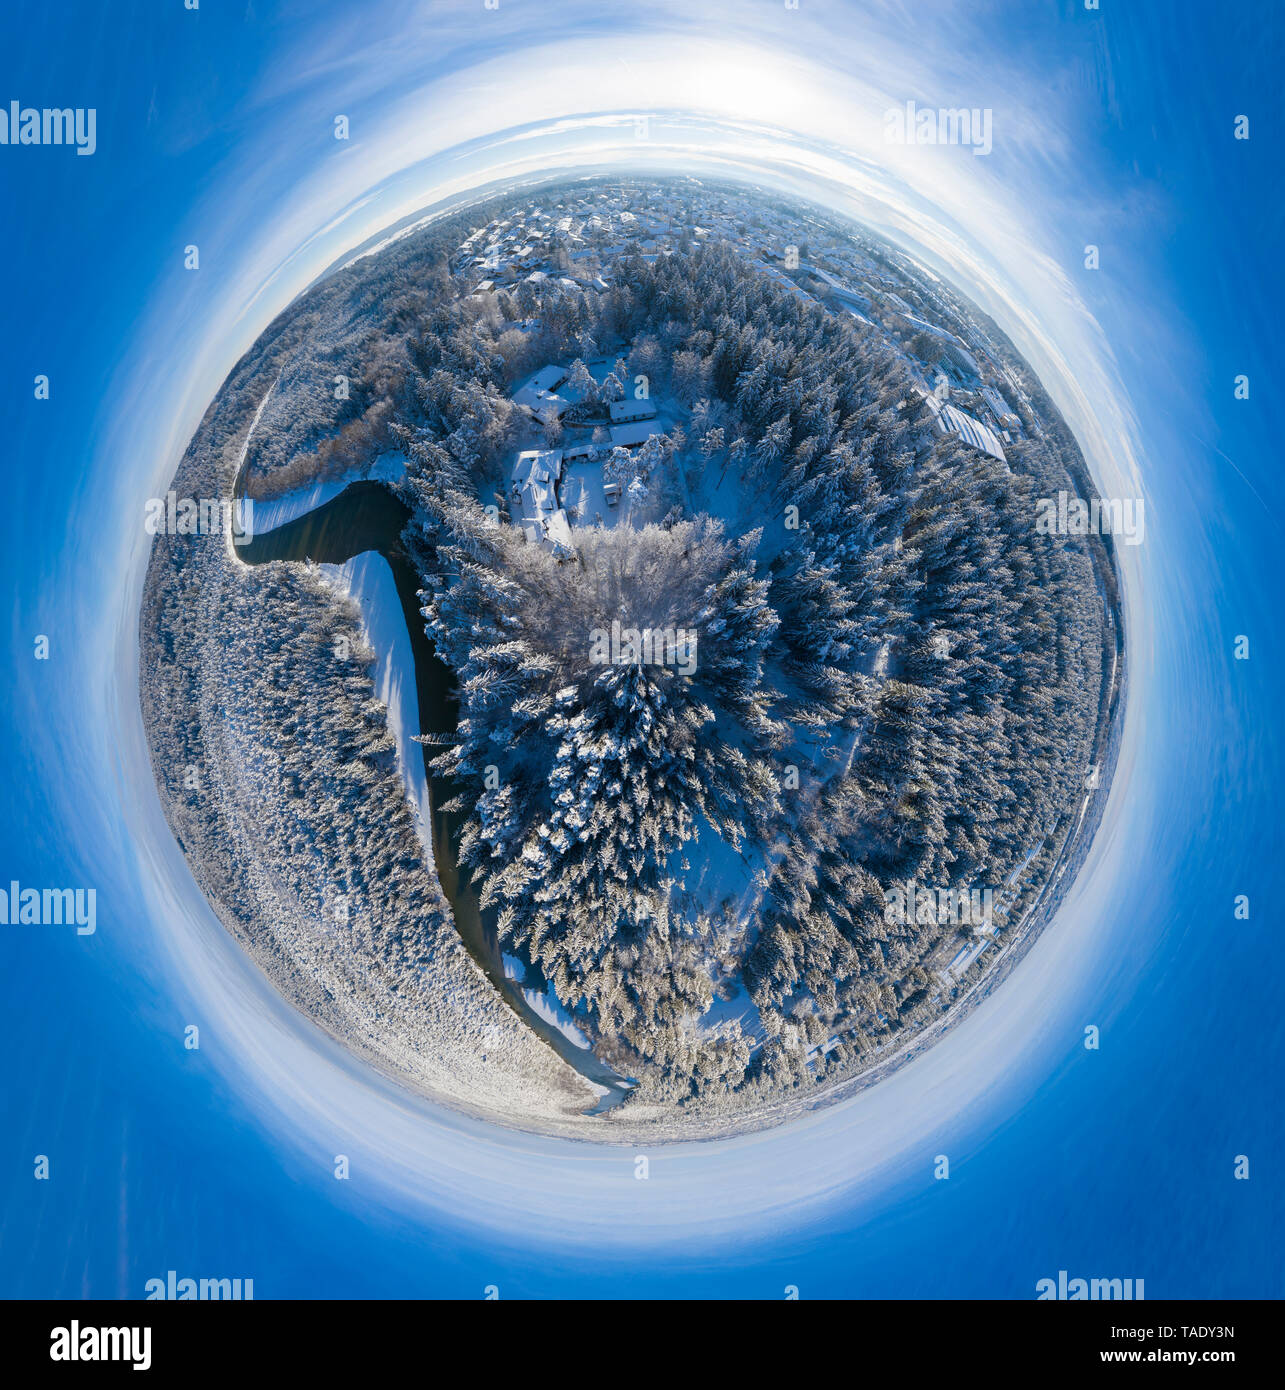 Alemania, Baviera, panorama esférico del río Isar y Geretsried en invierno Foto de stock